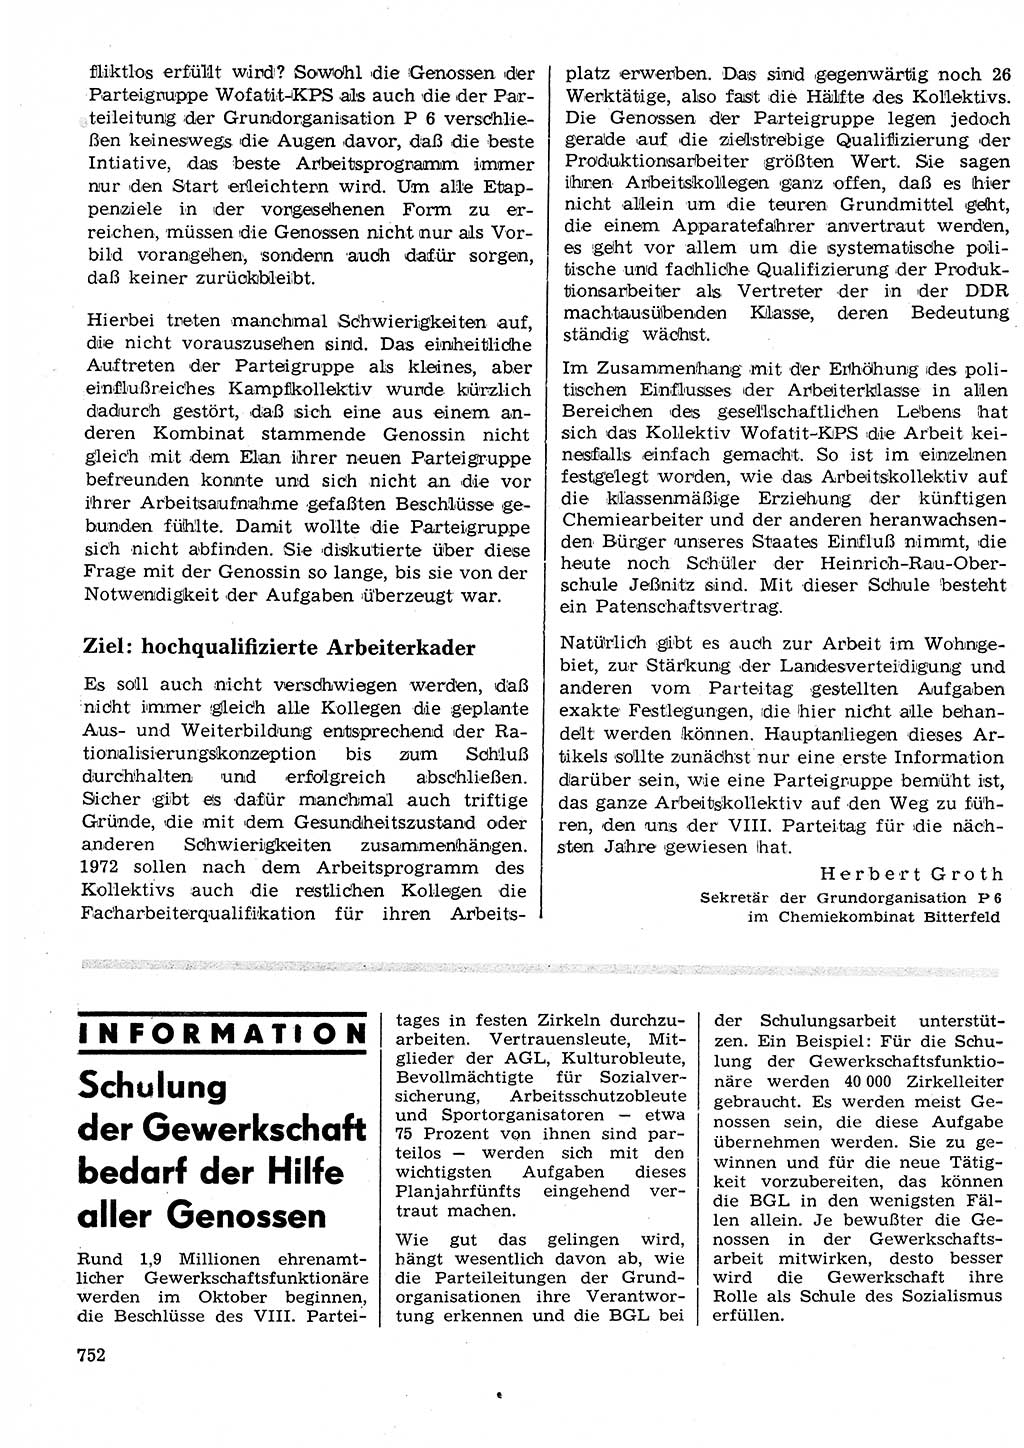 Neuer Weg (NW), Organ des Zentralkomitees (ZK) der SED (Sozialistische Einheitspartei Deutschlands) für Fragen des Parteilebens, 26. Jahrgang [Deutsche Demokratische Republik (DDR)] 1971, Seite 752 (NW ZK SED DDR 1971, S. 752)